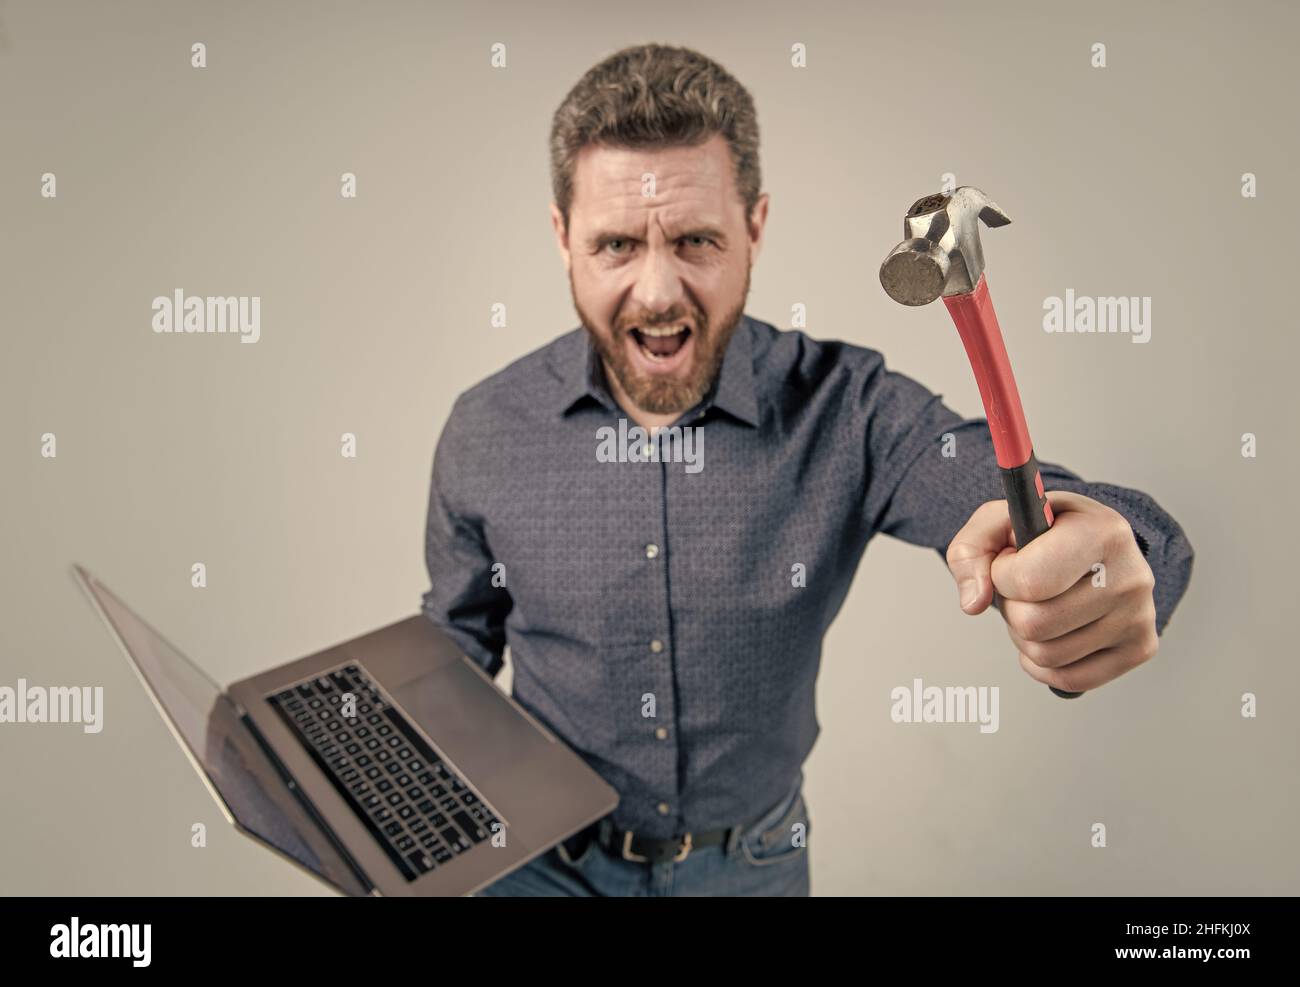 Aufgabe konnte nicht abgeschlossen werden. Wütender Mann, der Hammer und Laptop hält. Computerrage. Wütend Stockfoto